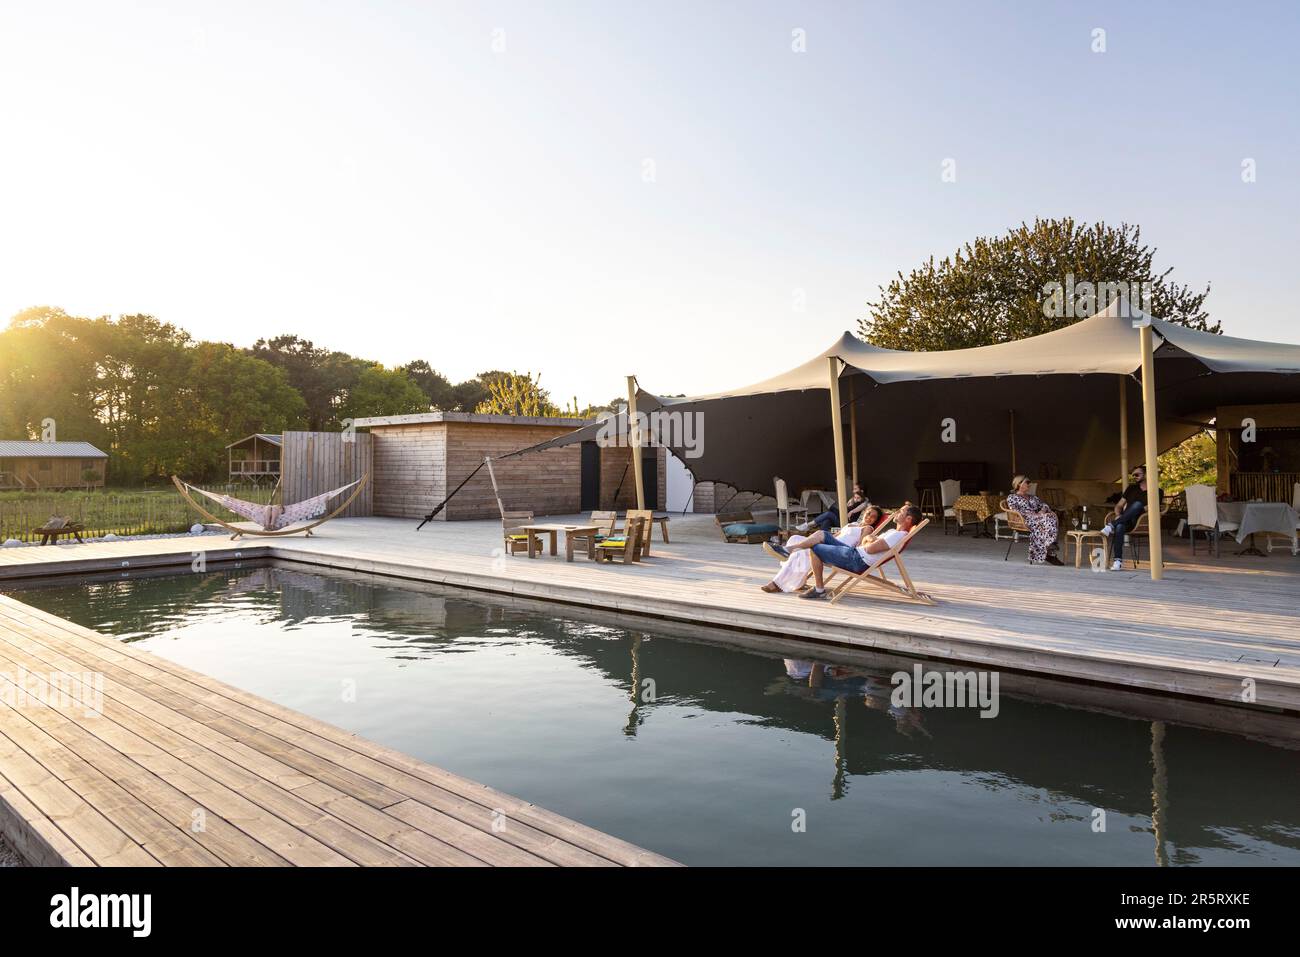 Francia, Morbihan, Ploemel, terrazza e piscina dell'insolito alloggio sito Dihan Foto Stock